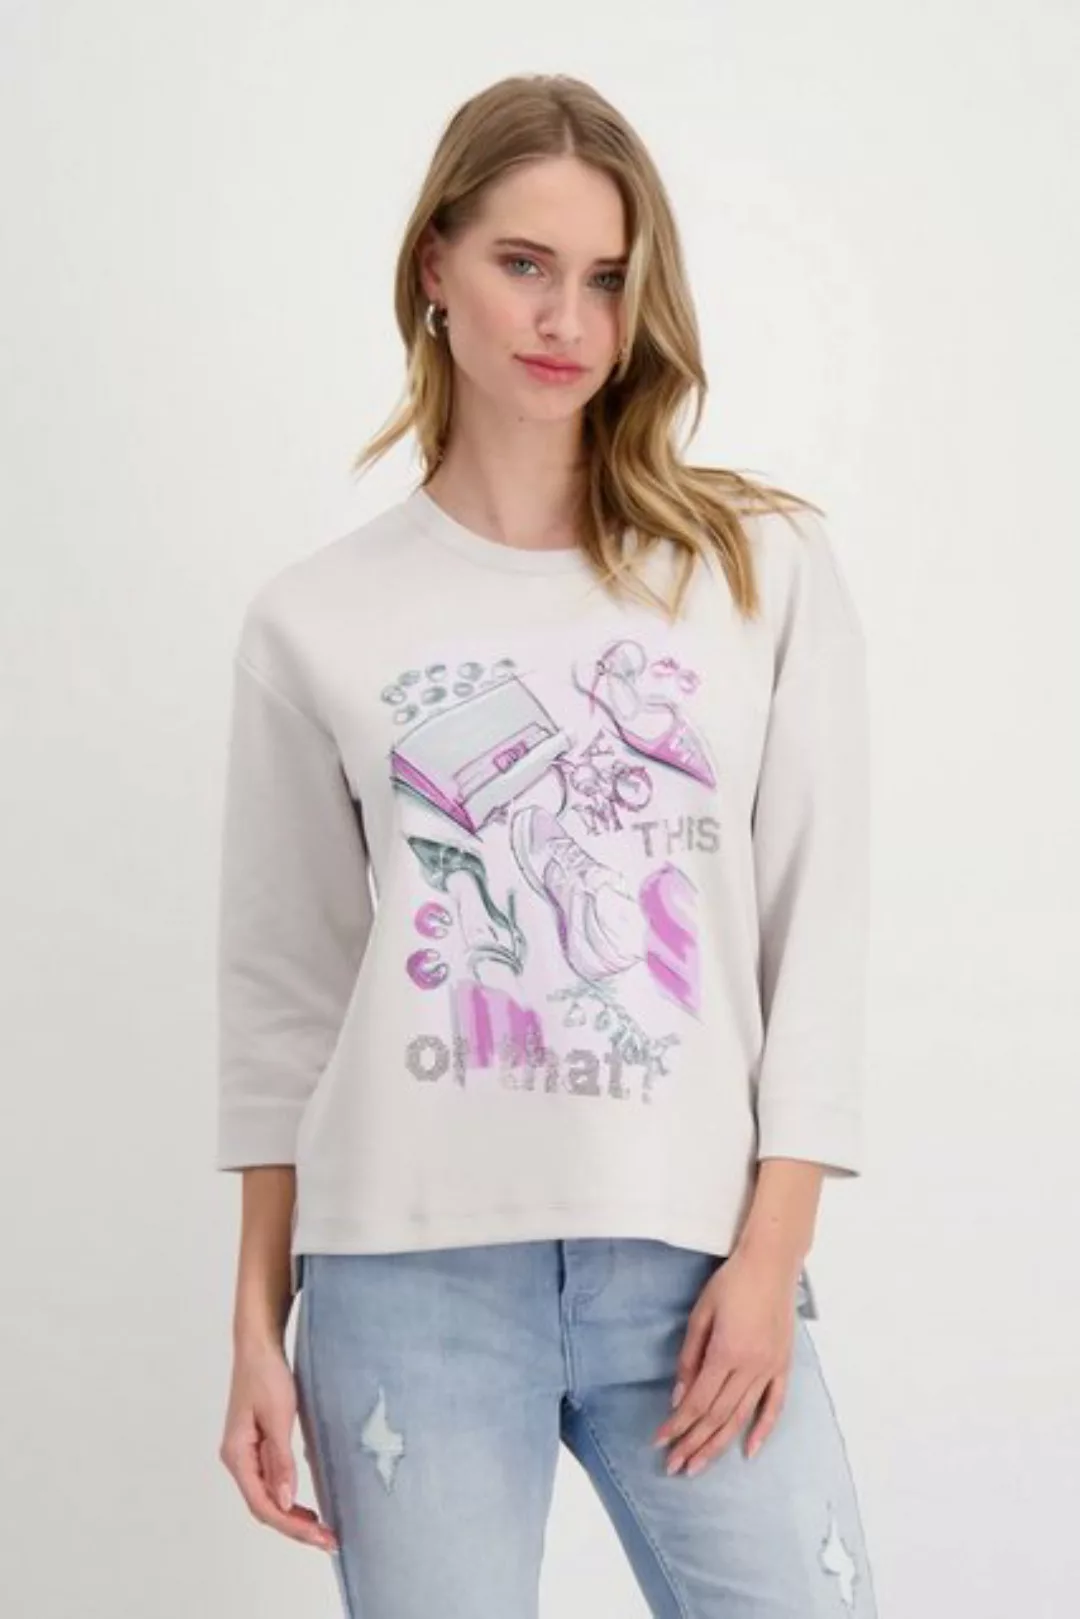 Monari 2-in-1-Pullover günstig online kaufen